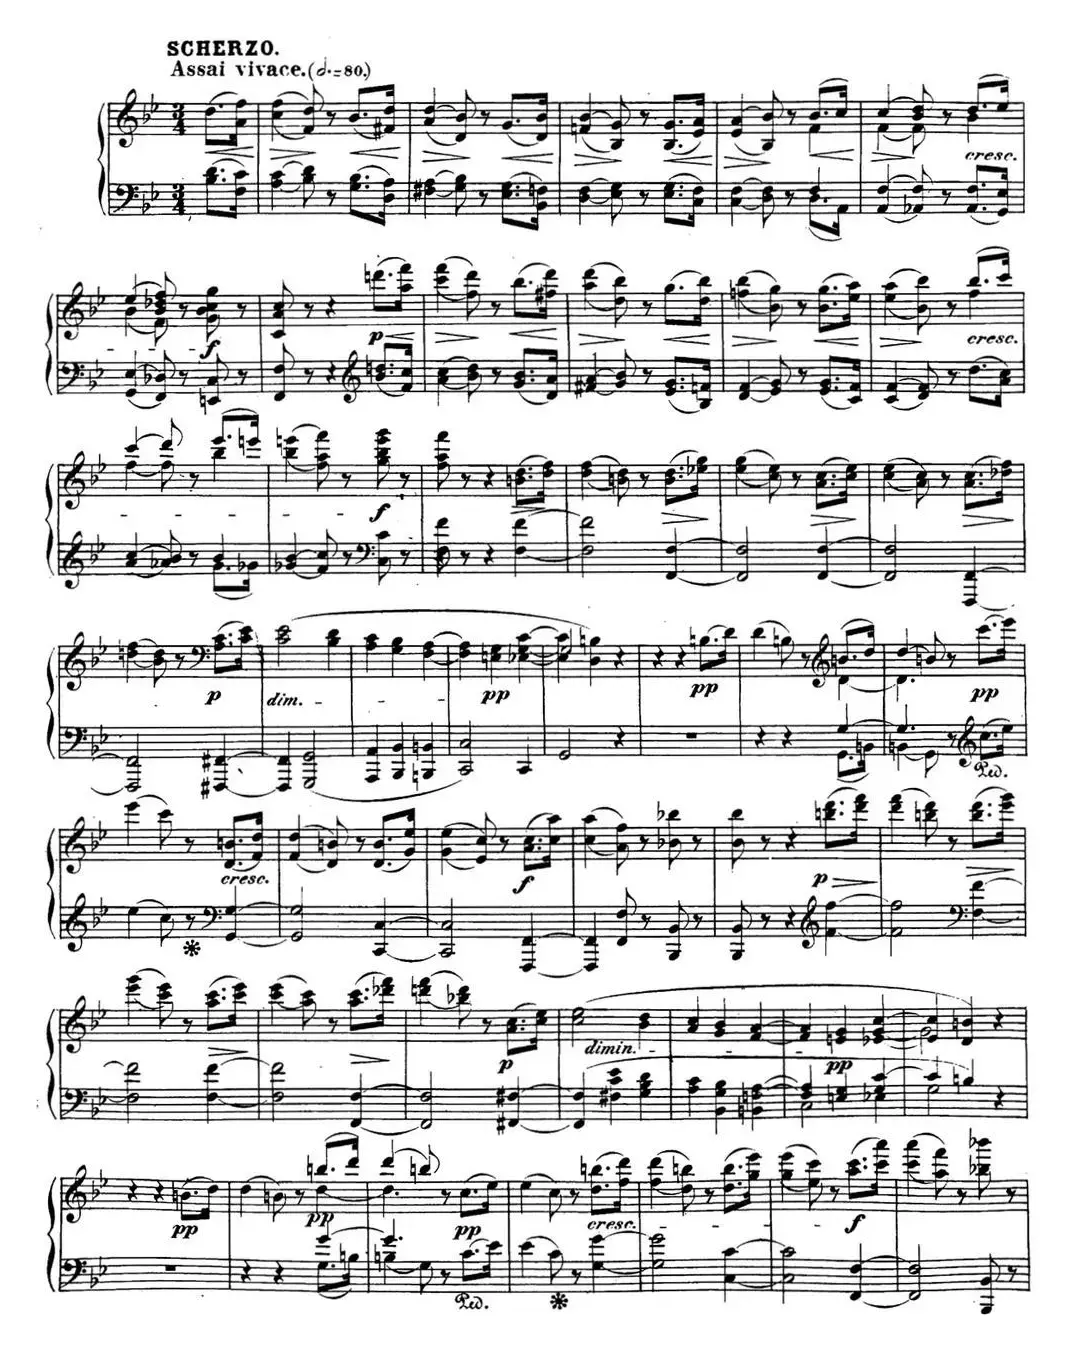 贝多芬钢琴奏鸣曲29 钢琴（锥子键琴）降B大调 Op.106 B-flat major